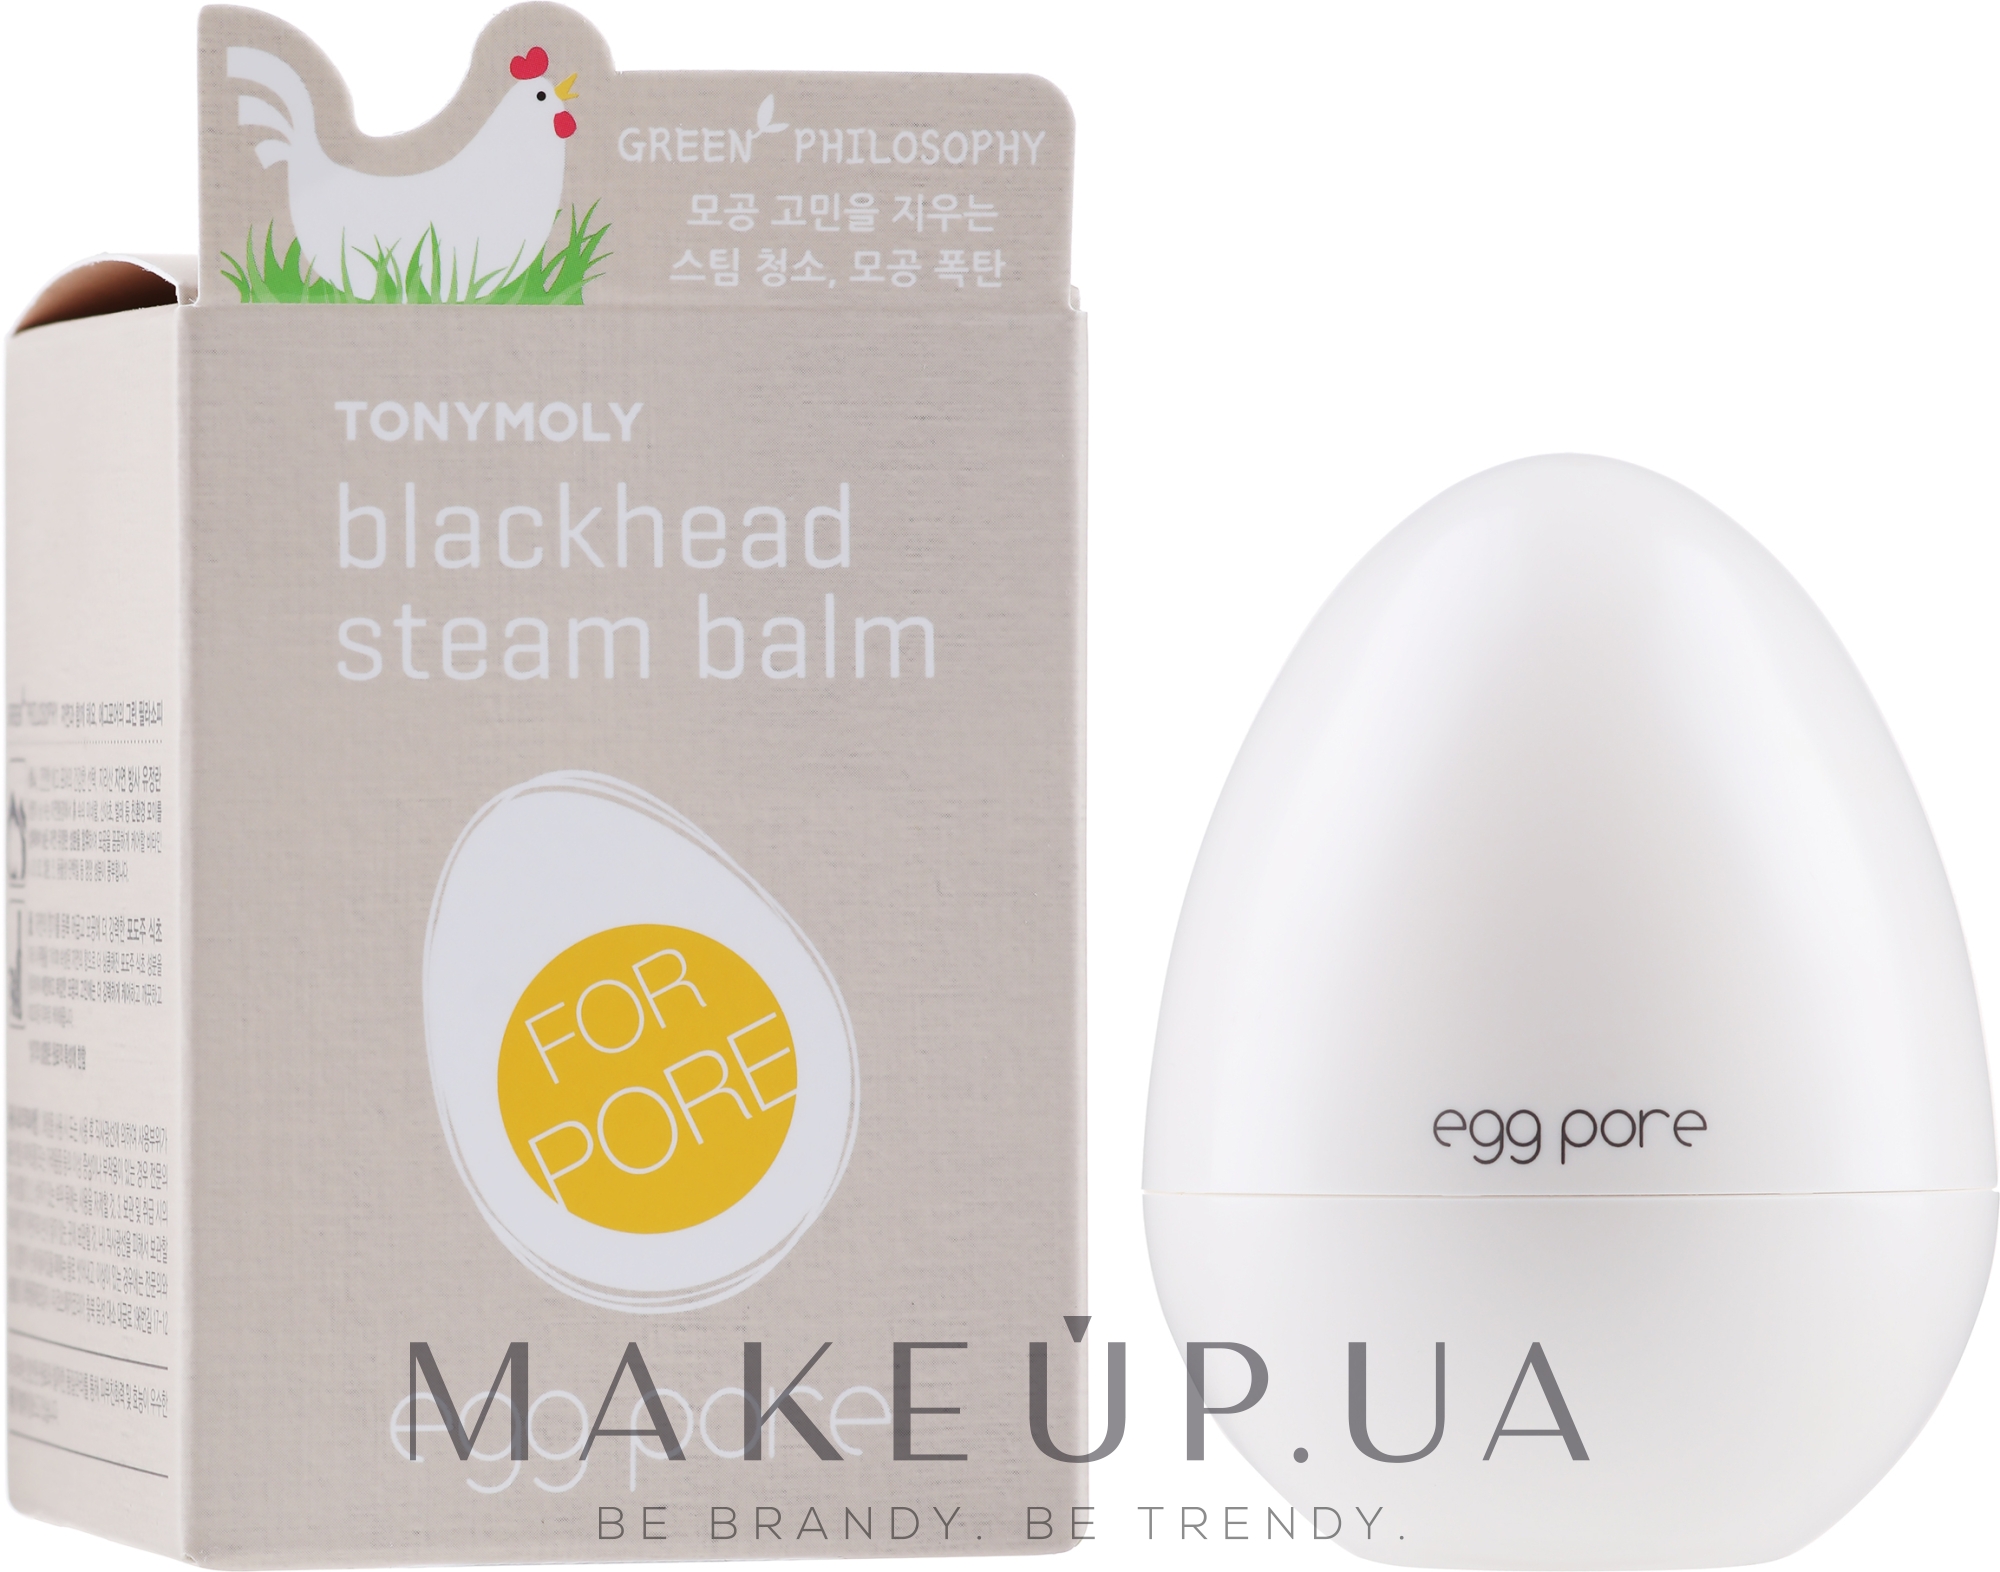 Blackhead steam balm egg